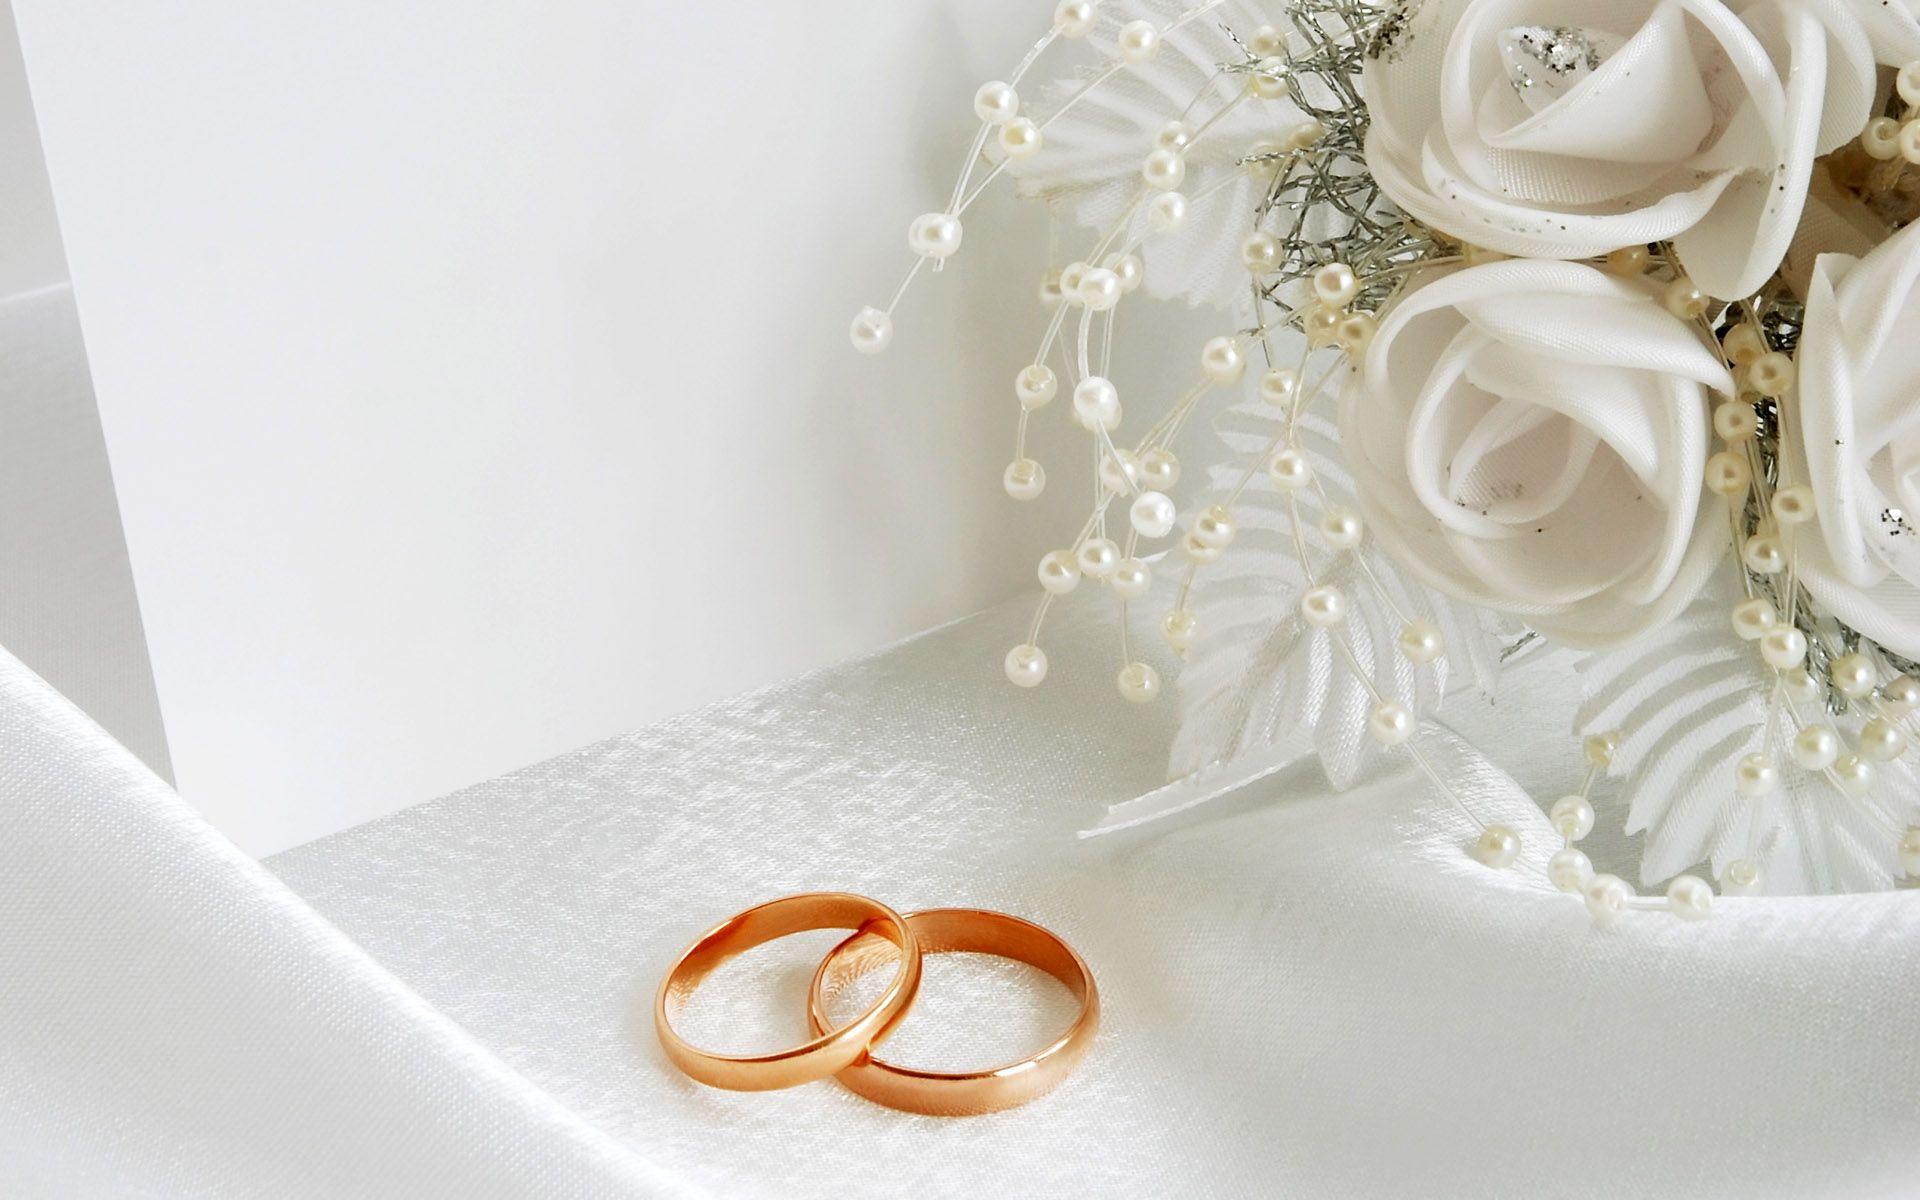 Glamorous Wedding Luxury Gold Rings On The White Invitation